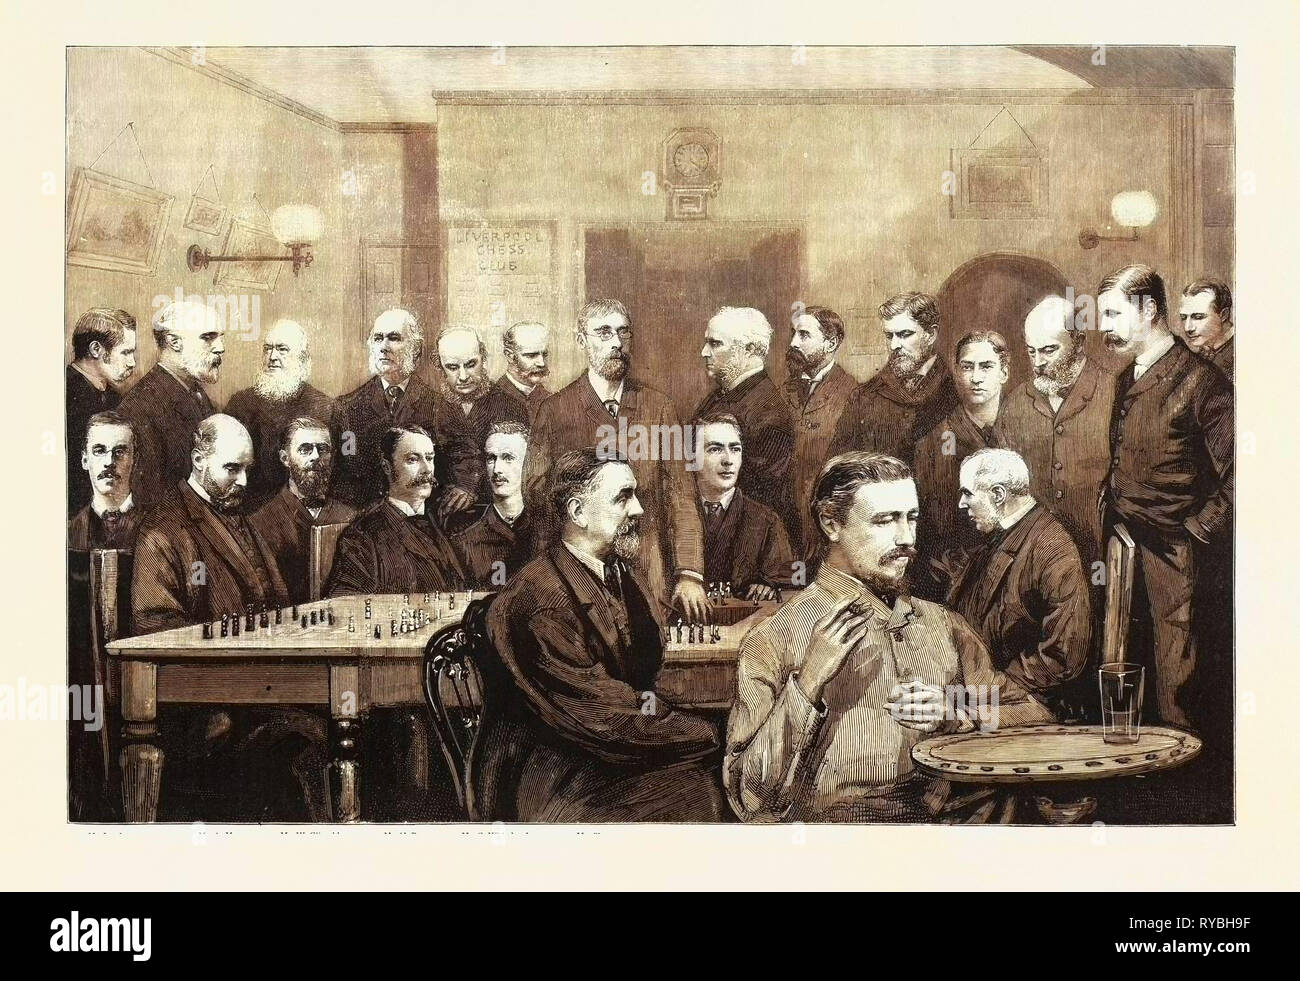 La Internazionale congresso scacchi: alcuni dei principali membri del Liverpool Chess Club, il sig. Harris, il sig. B. barbiere, Rev. H.H. Higgins, il sig. C.H. Cox, il sig. S. Wright, il sig. Formby, il sig. A. Masterizzazione (Presidente), il Rev. J. Owen, sig. J. Gallagher, il sig. Wellington, il sig. Kaizer, sig. J. Lister, il sig. Ellis, il sig. Powell, il sig. cuoio, il sig. A. Meyers, il sig. W. Clissold, il sig. H. Bennett, il sig. G. Whitehead, il sig. Charney, il Sig. Howard, il sig. J.H. Blackburne, il dottor Sinclair, 1890 l'incisione Foto Stock